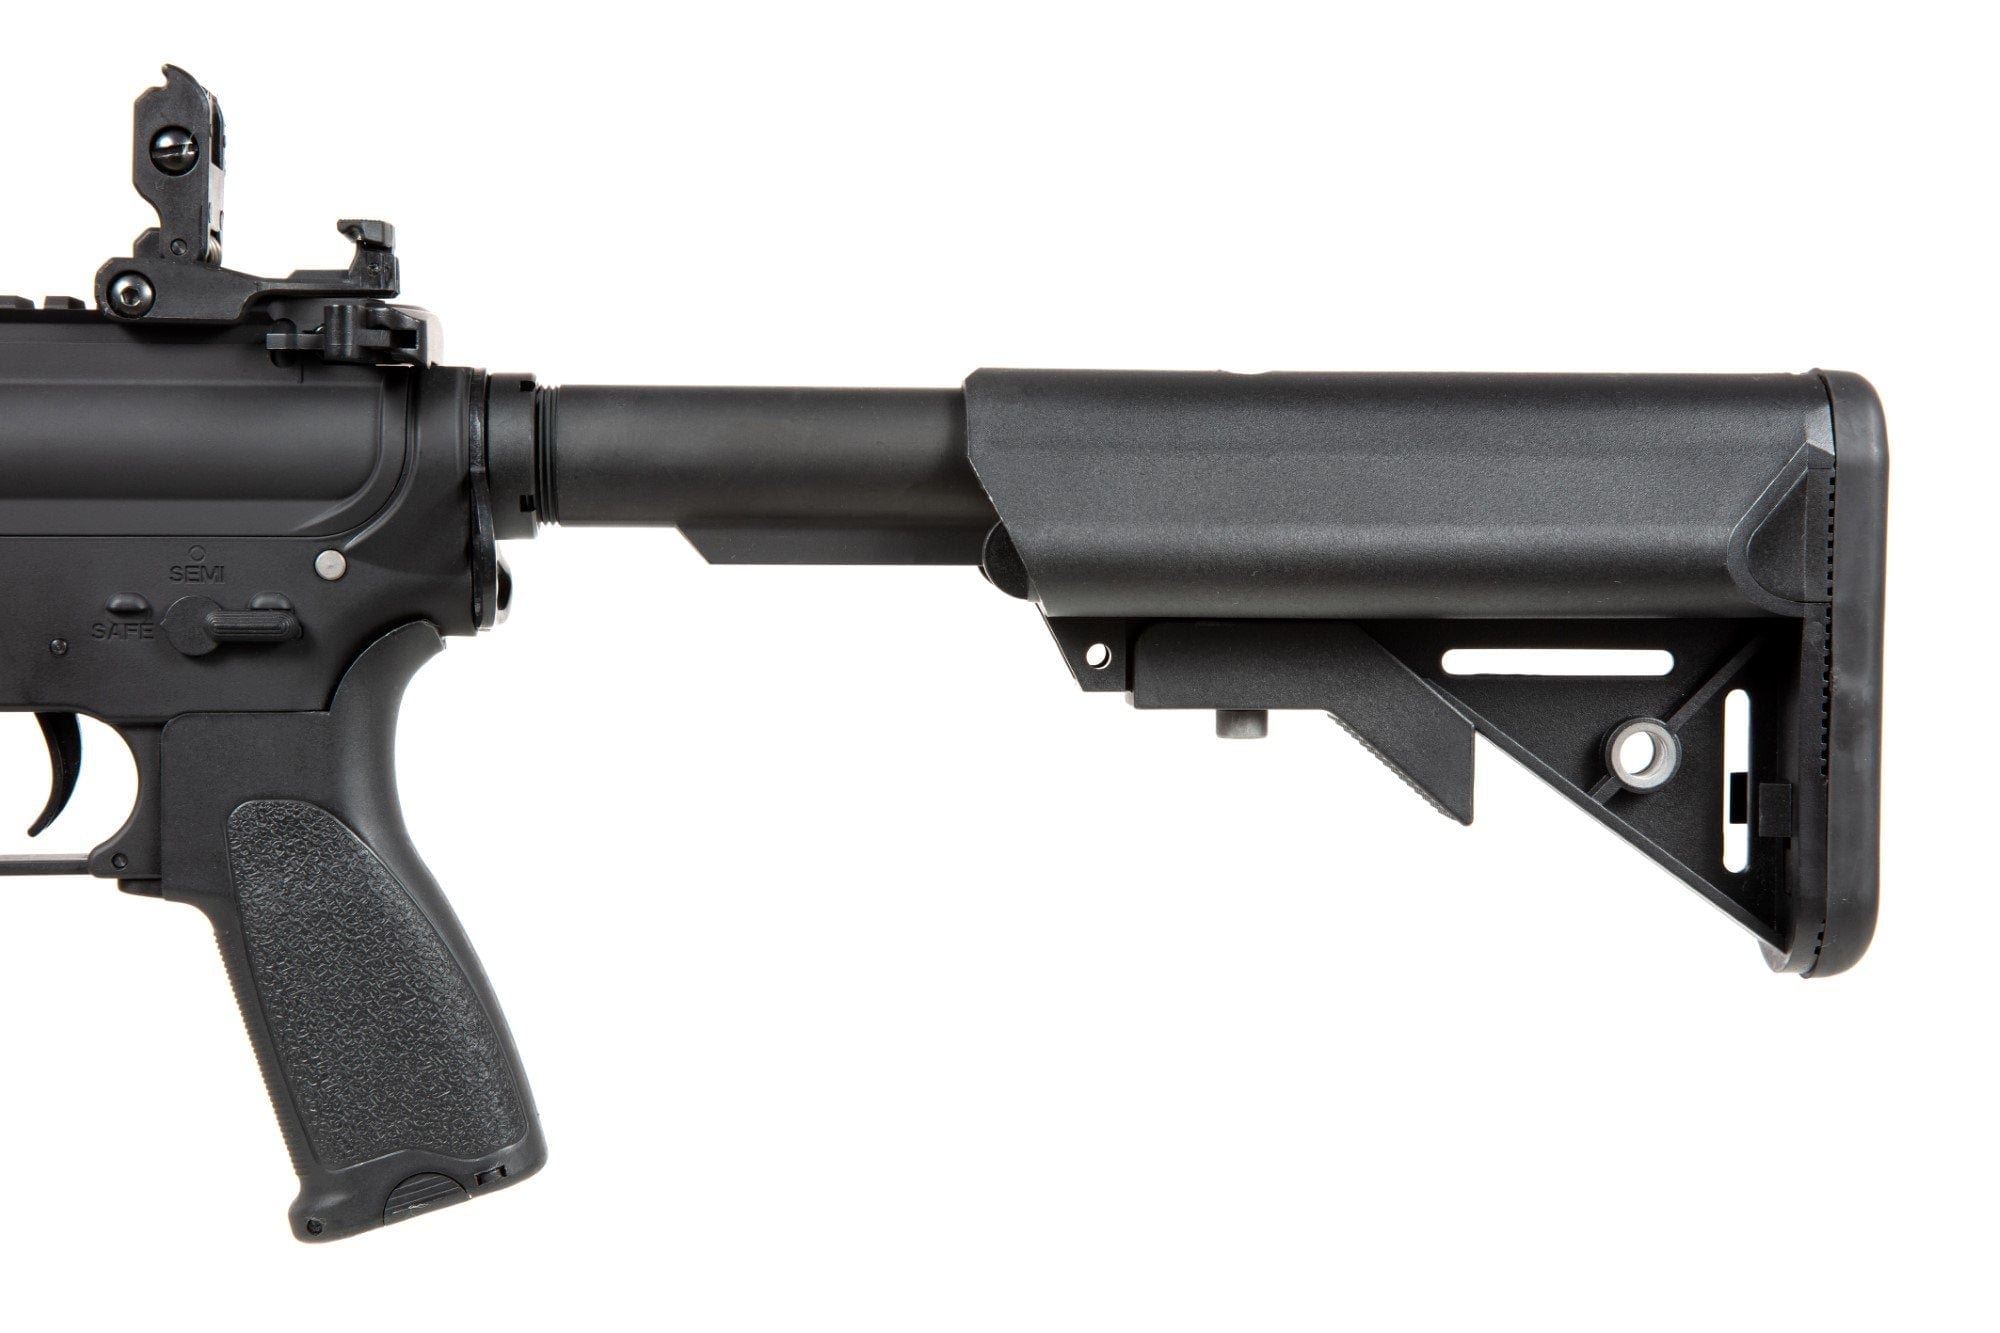 RRA SA-E11 EDGE™ Carbine Replica - black by Specna Arms on Airsoft Mania Europe